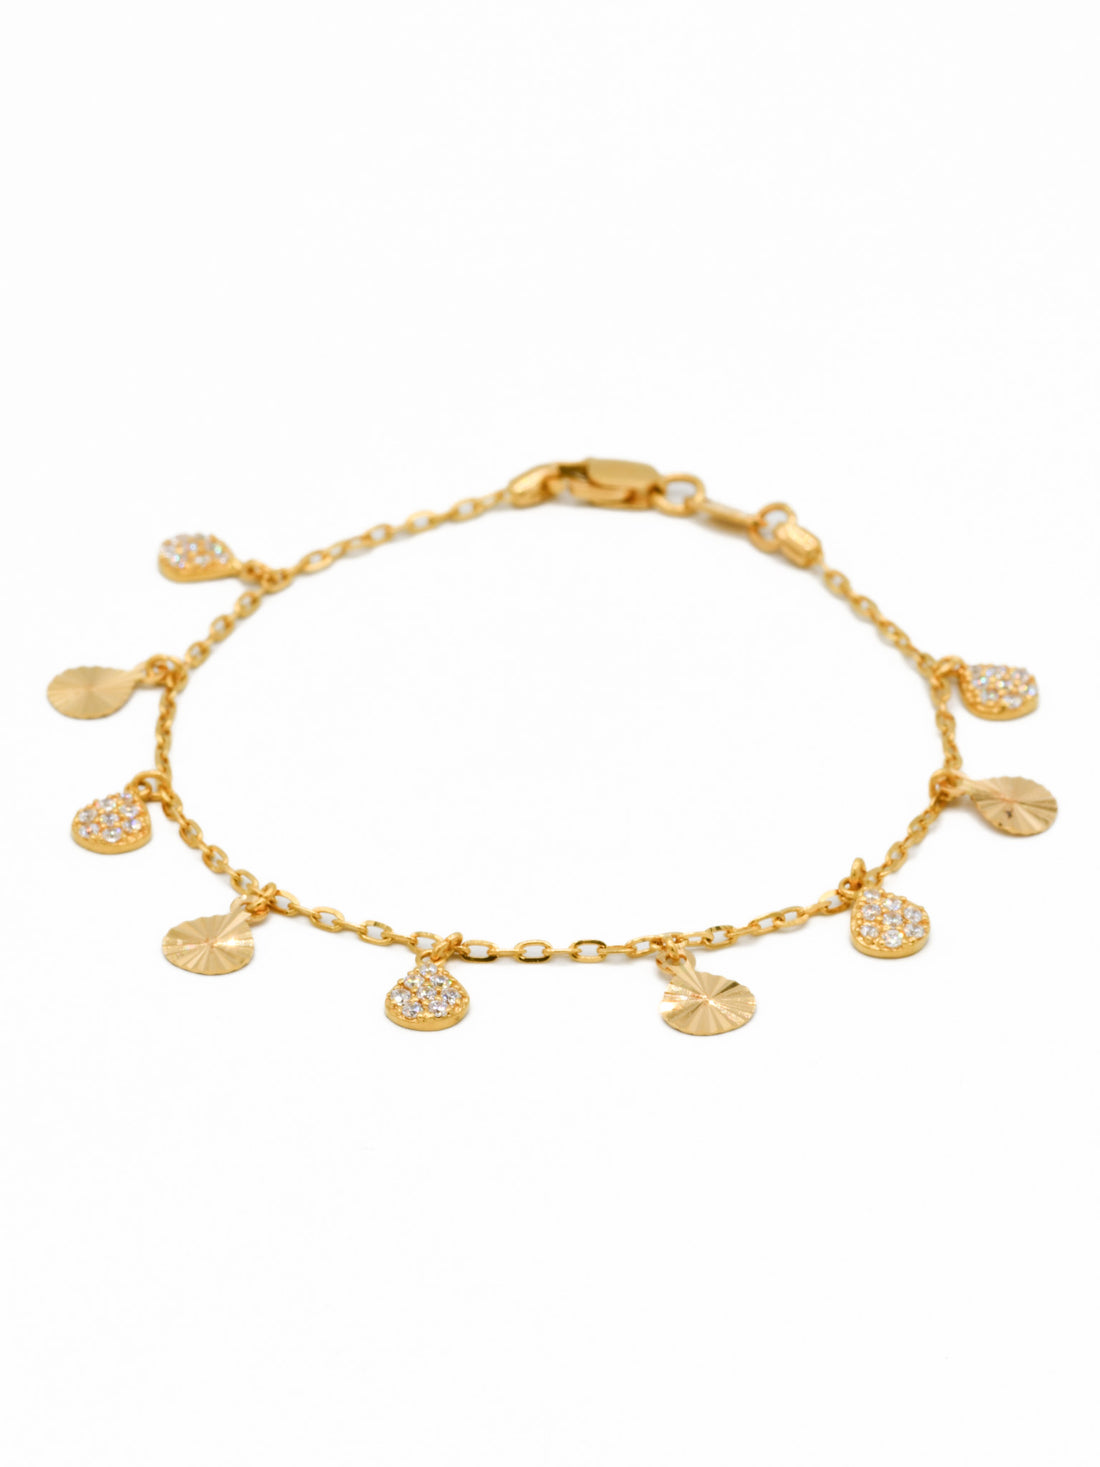 22ct Gold CZ Charms Ladies Bracelet - Roop Darshan